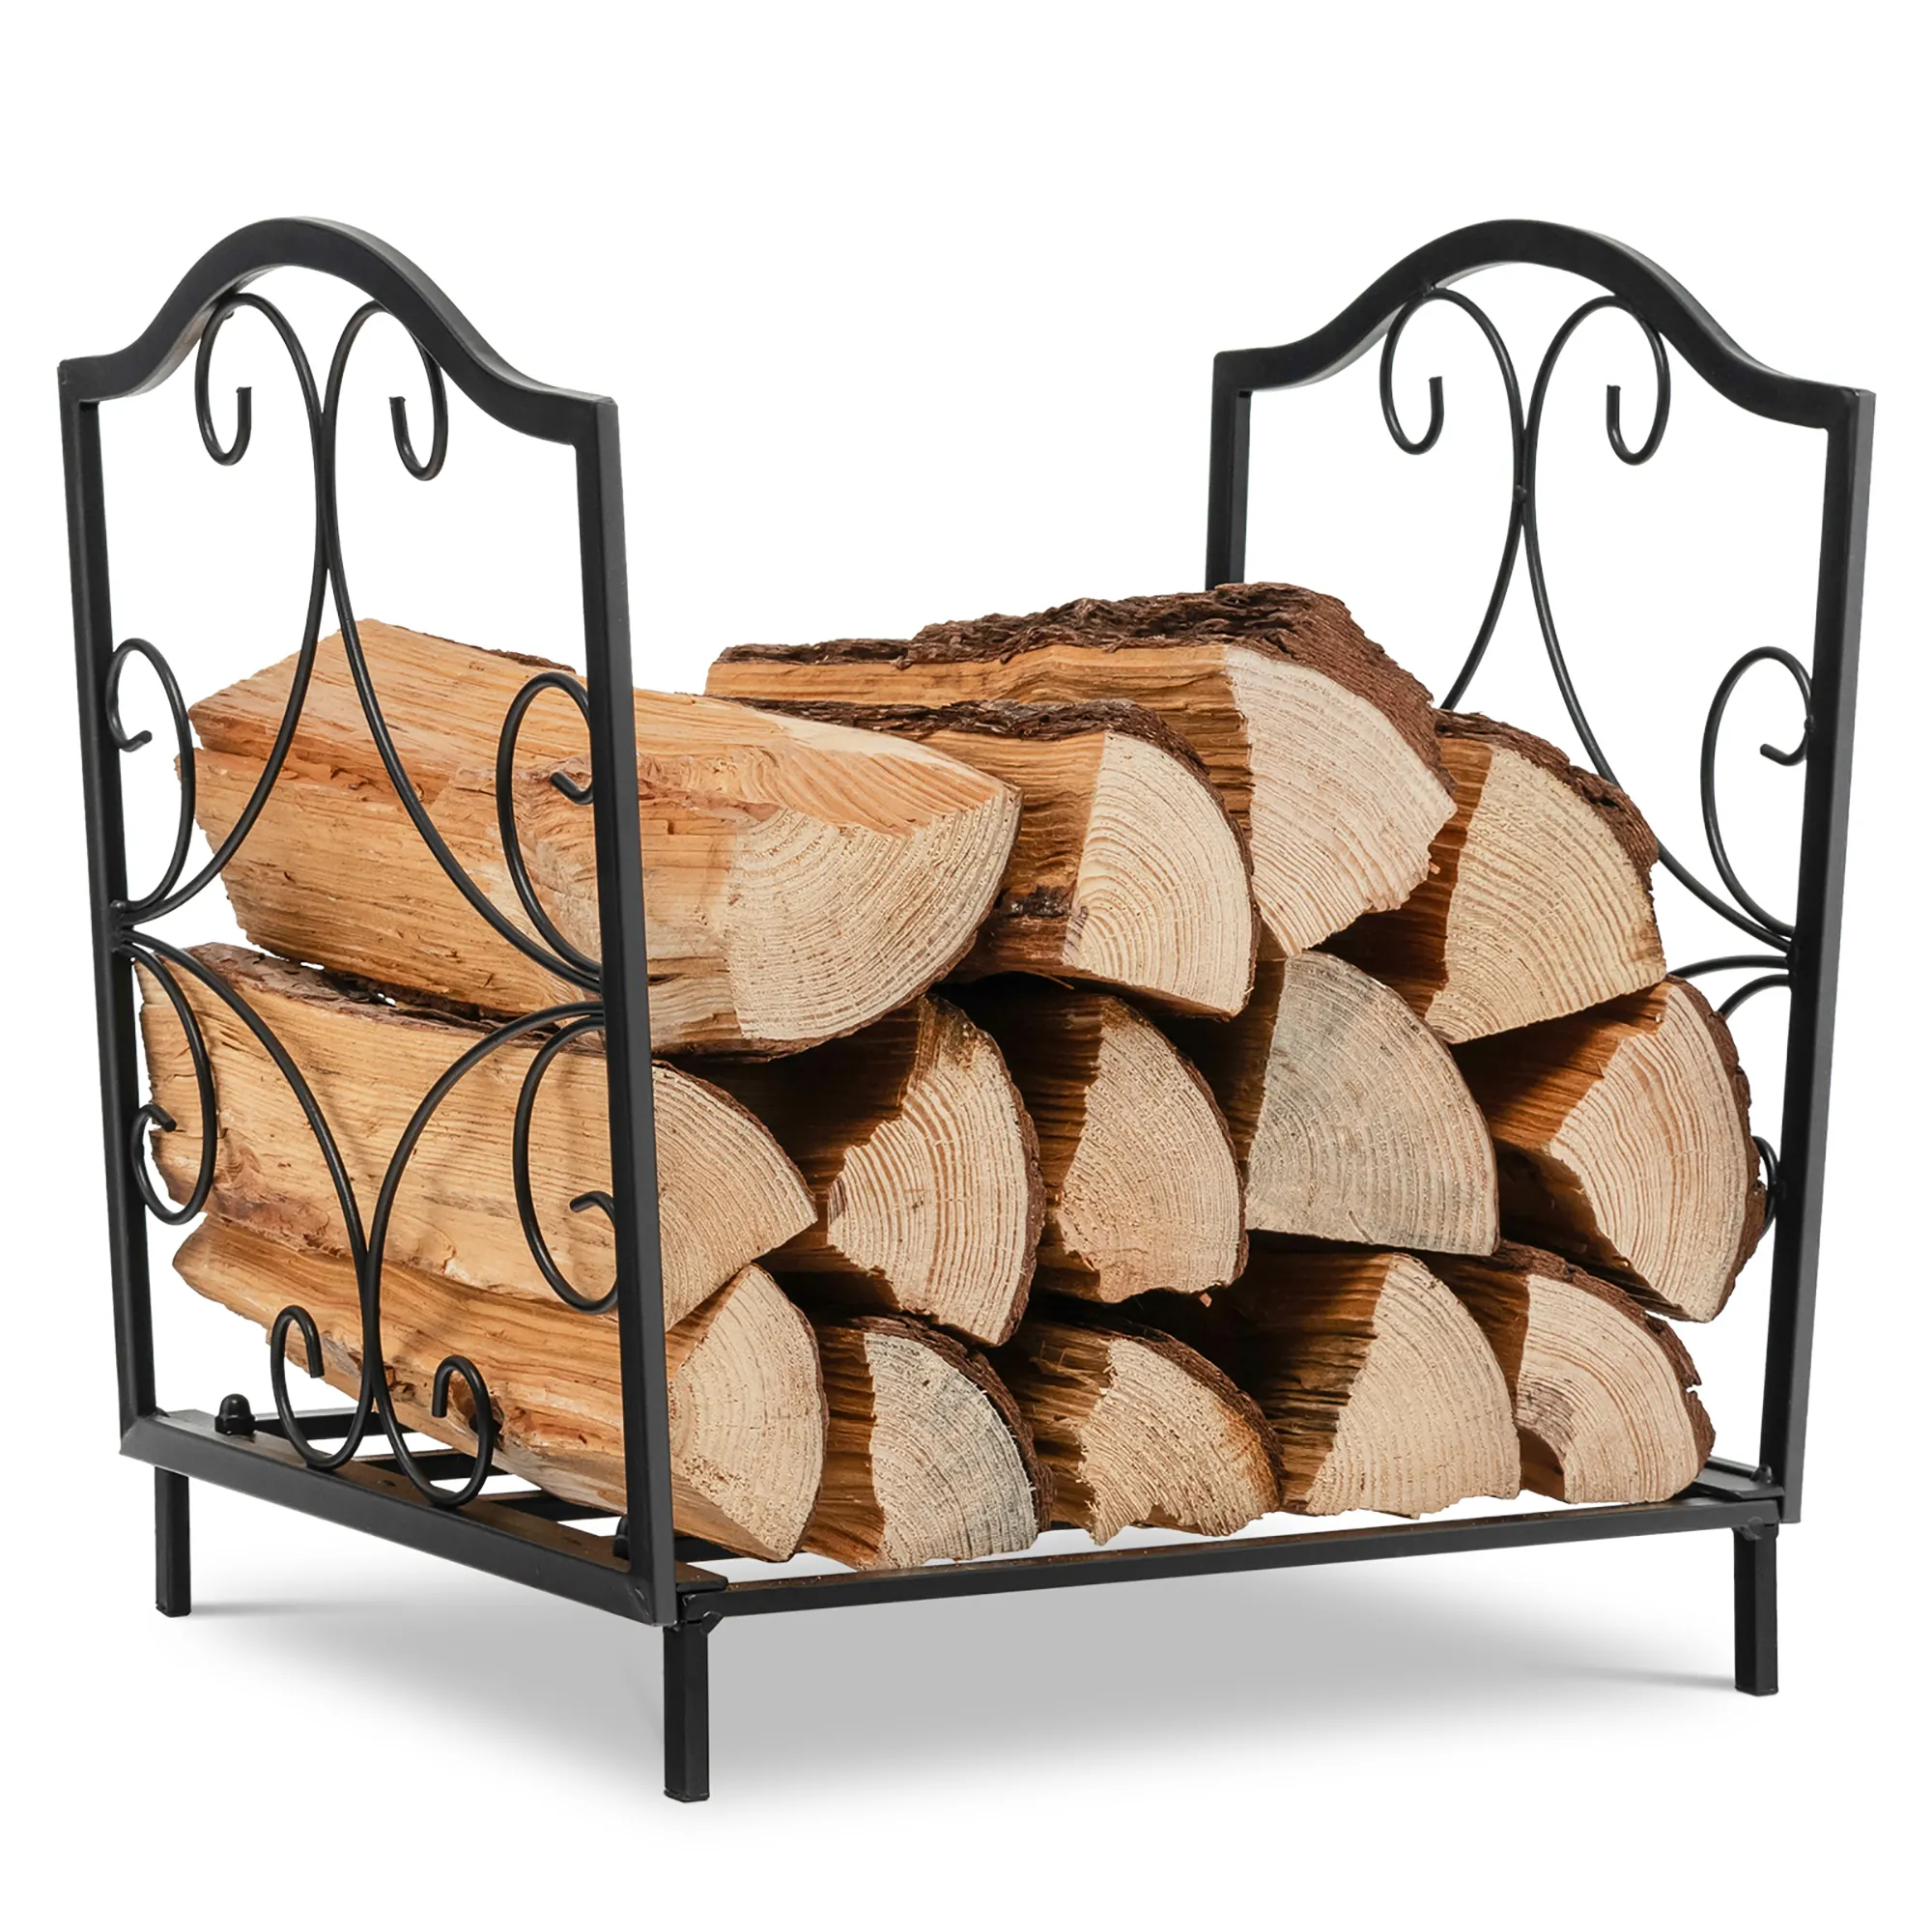 Hochwertiges ofen getrocknetes geteiltes Brennholz, ofen getrocknetes Brennholz in Beuteln Eichen feuerholz/Fichte/Birken brennholz in loser Schüttung